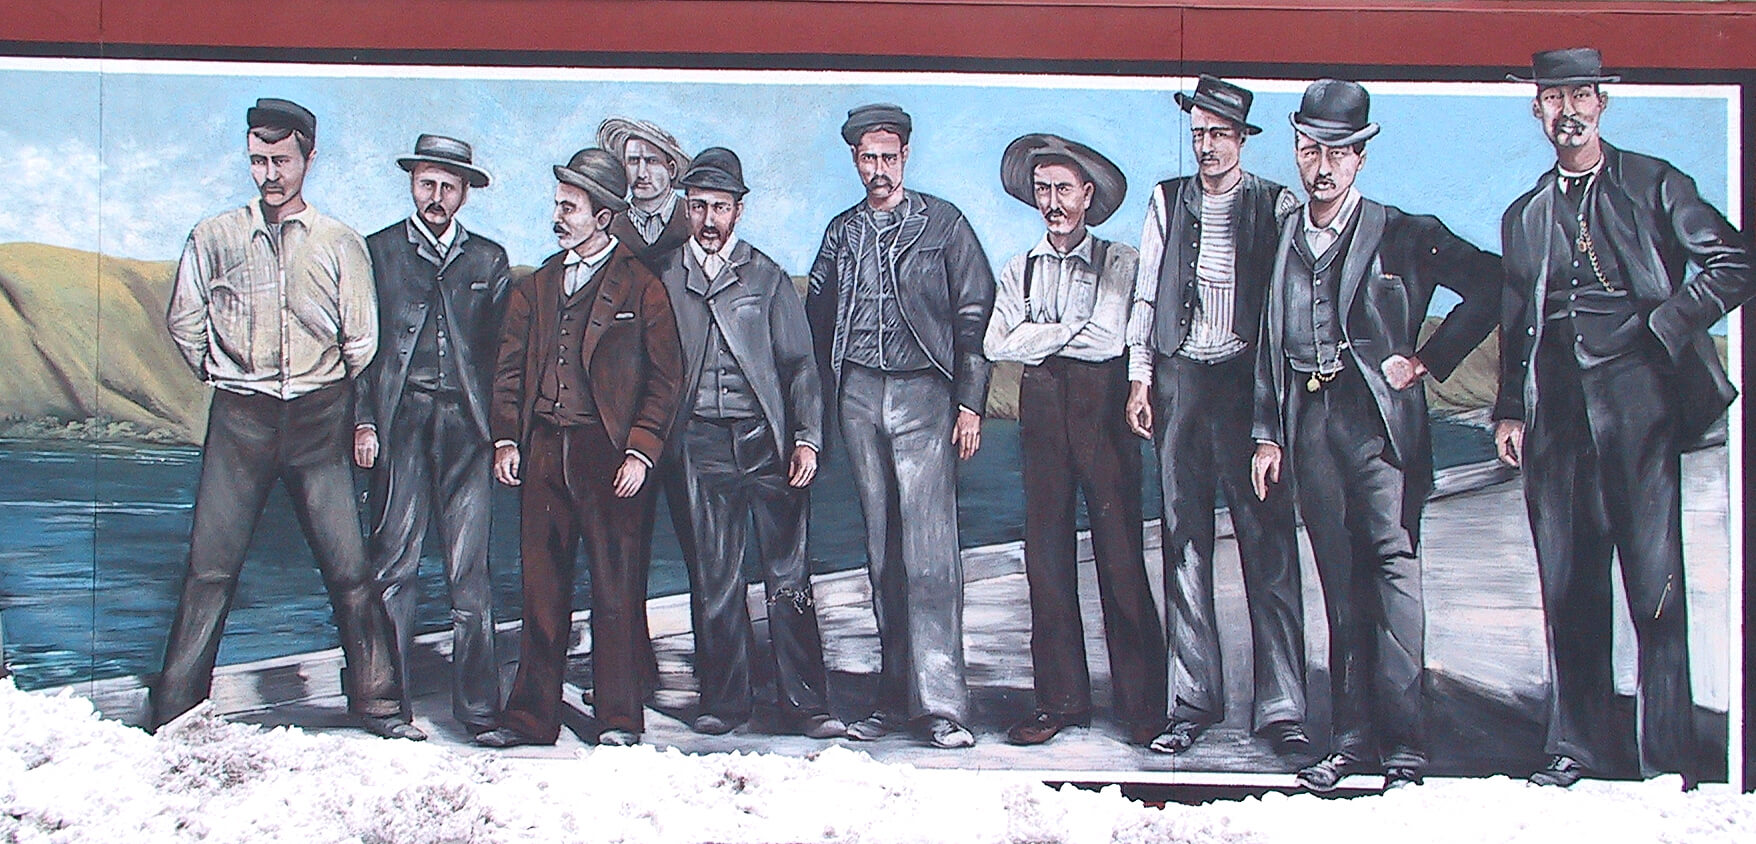 Crew of the S.S. Penticton